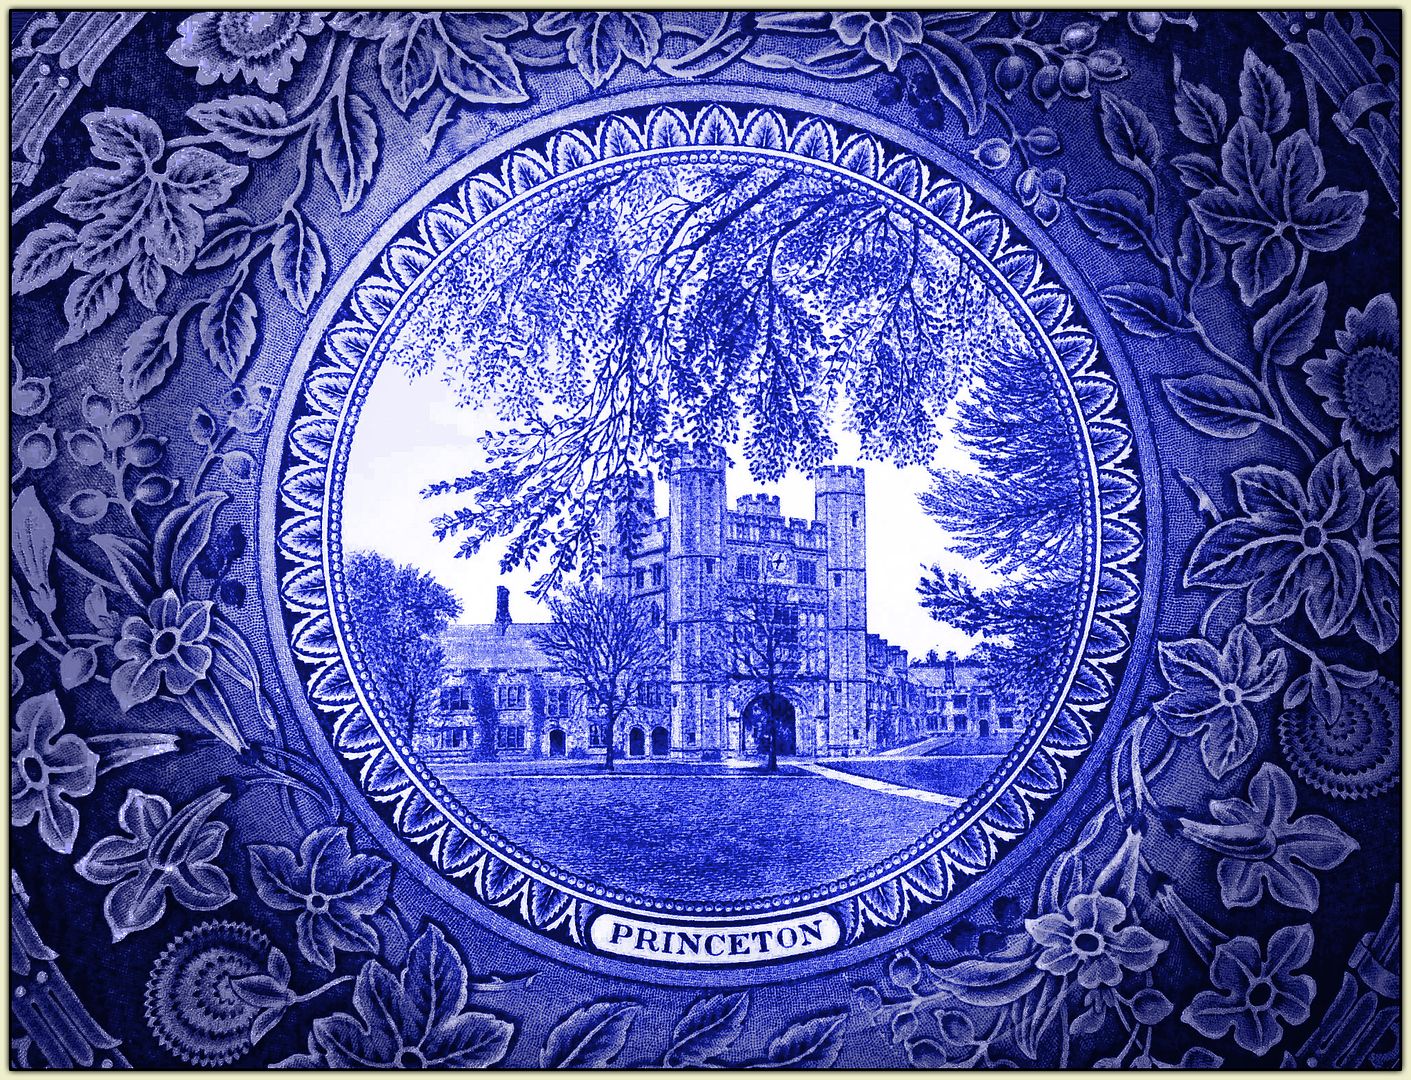 Princeton Plate Detail